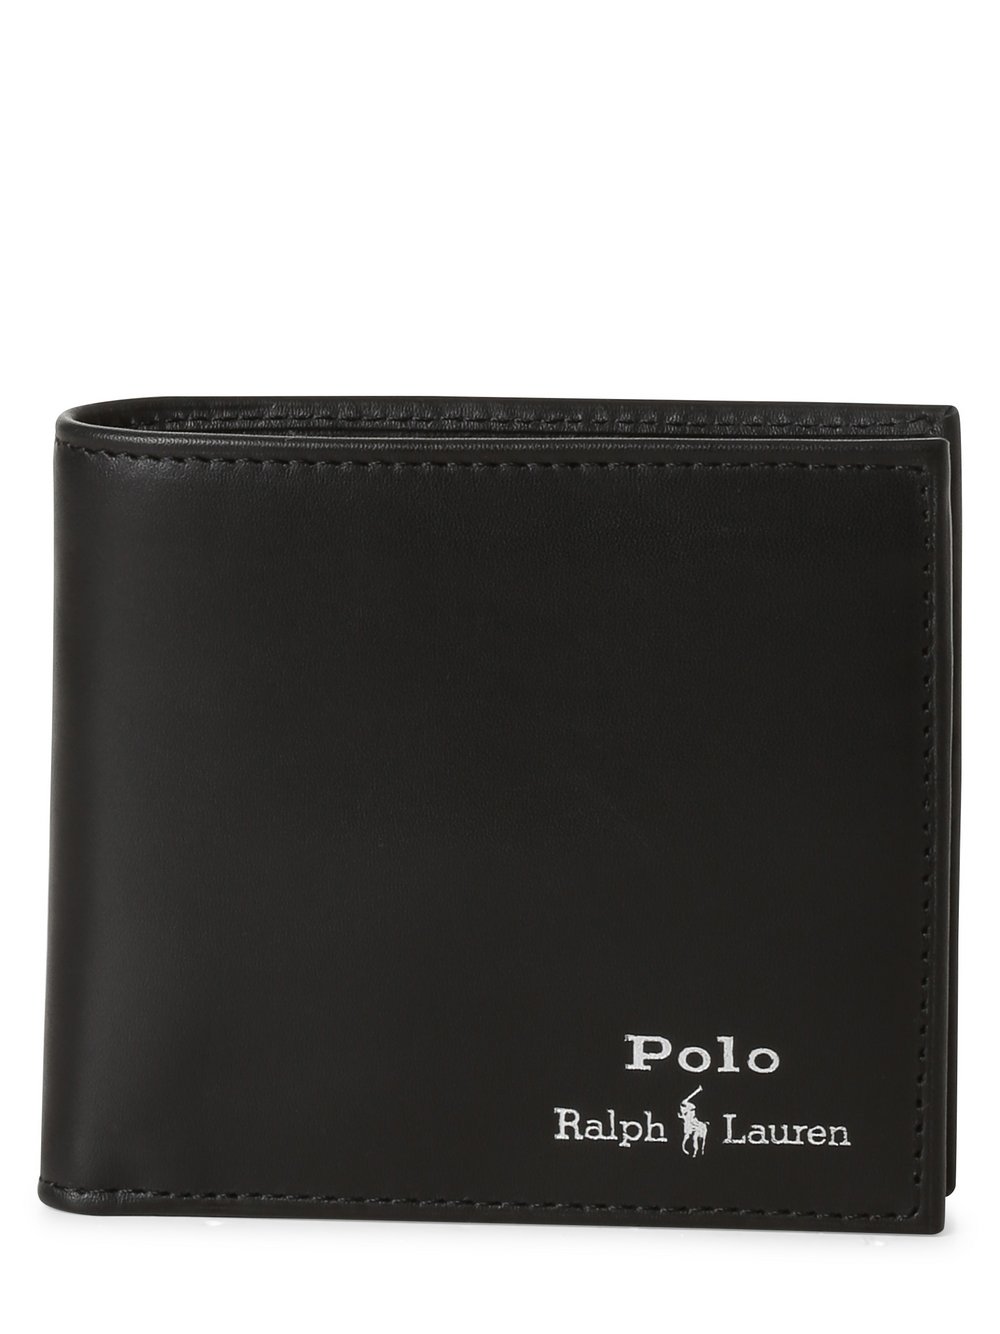 Polo Ralph Lauren - Portfel męski ze skóry, czarny